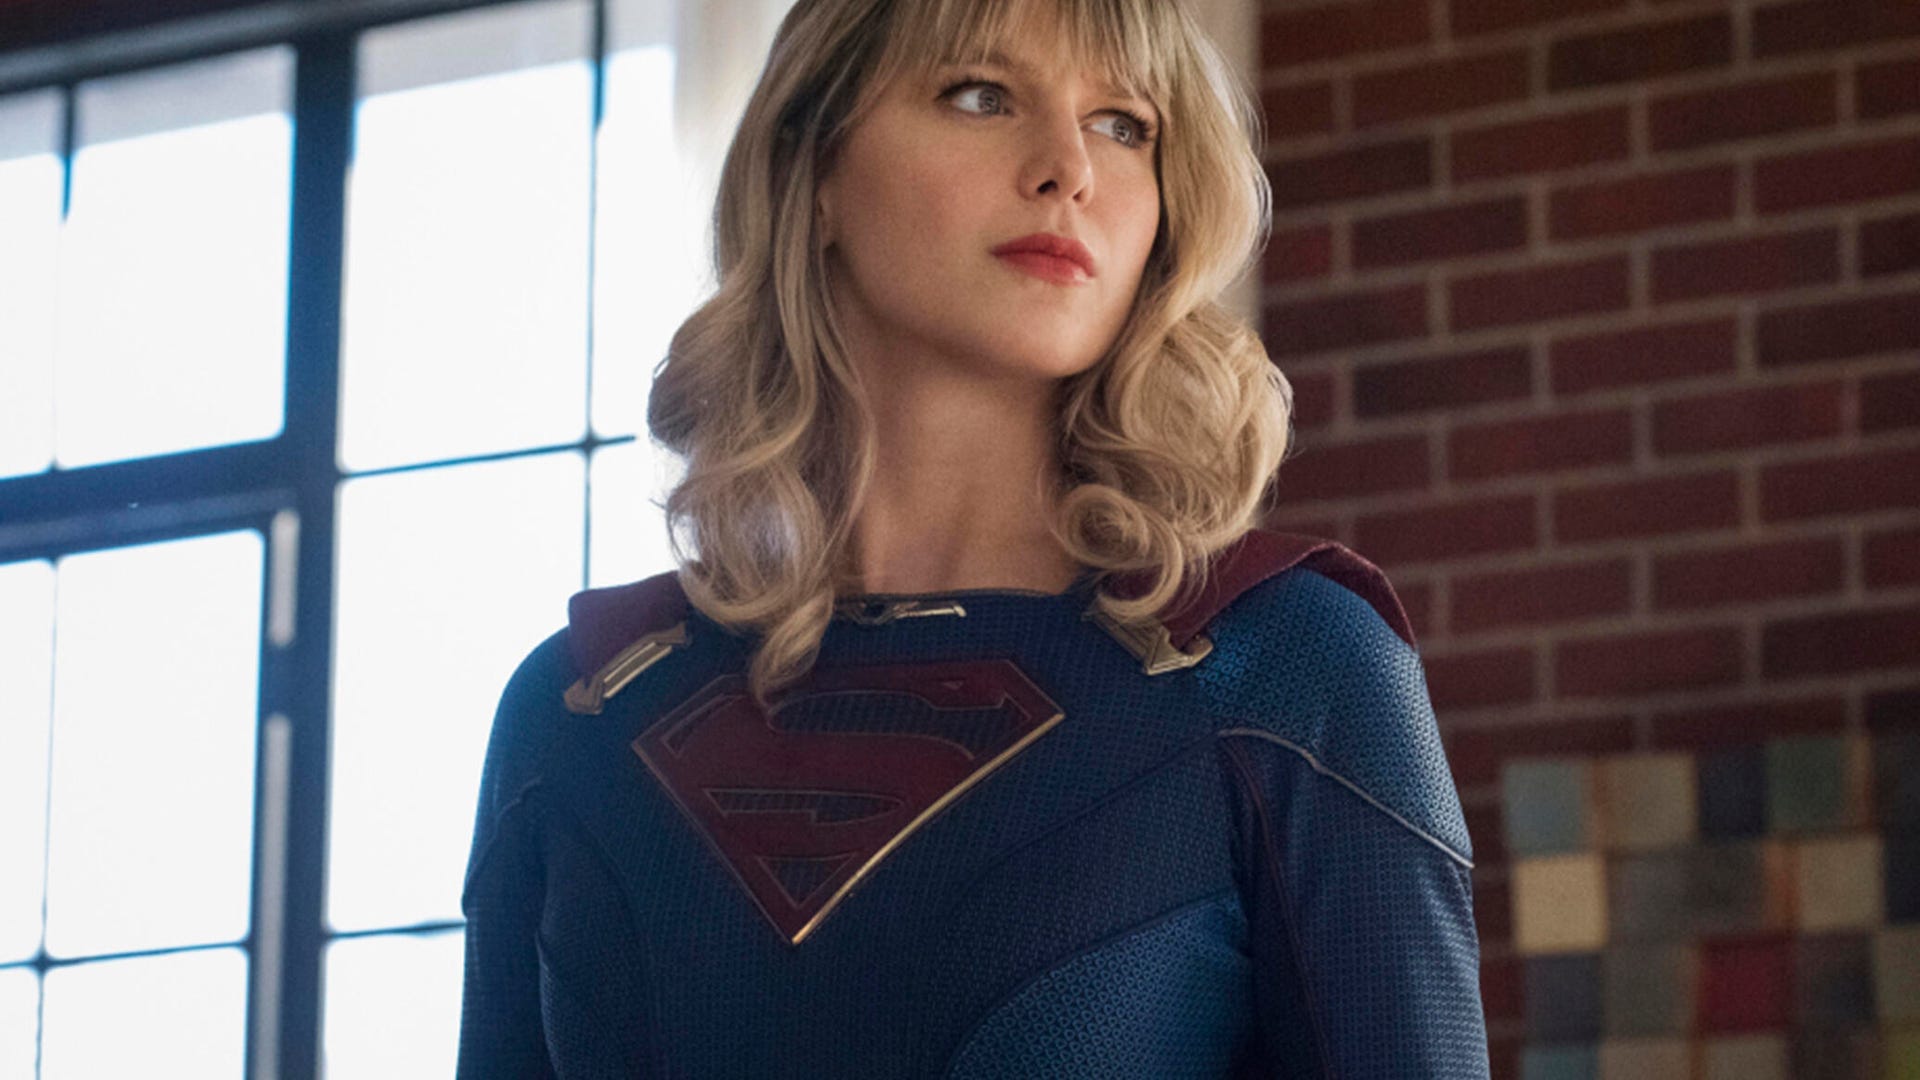 Melissa Benoist Supergirl 2020 Wallpapers